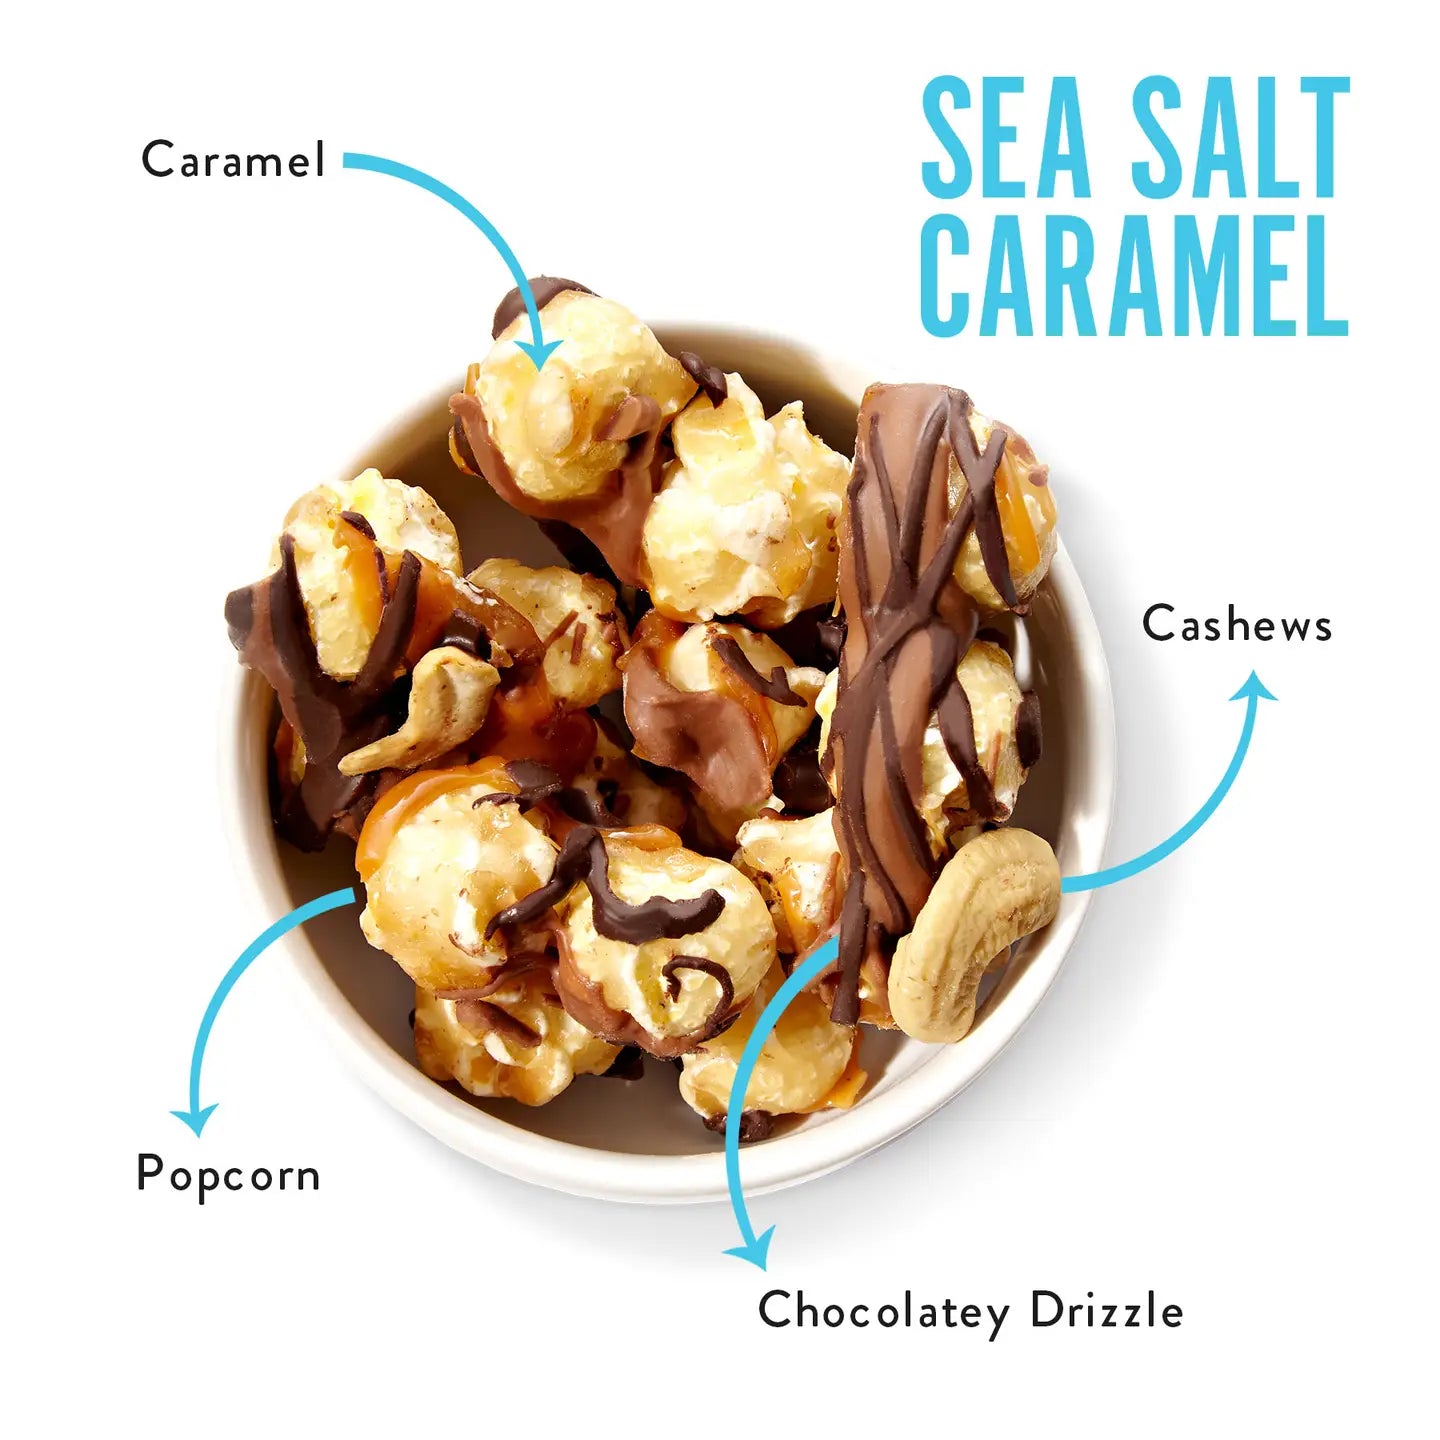 Sea Salt Caramel Mix